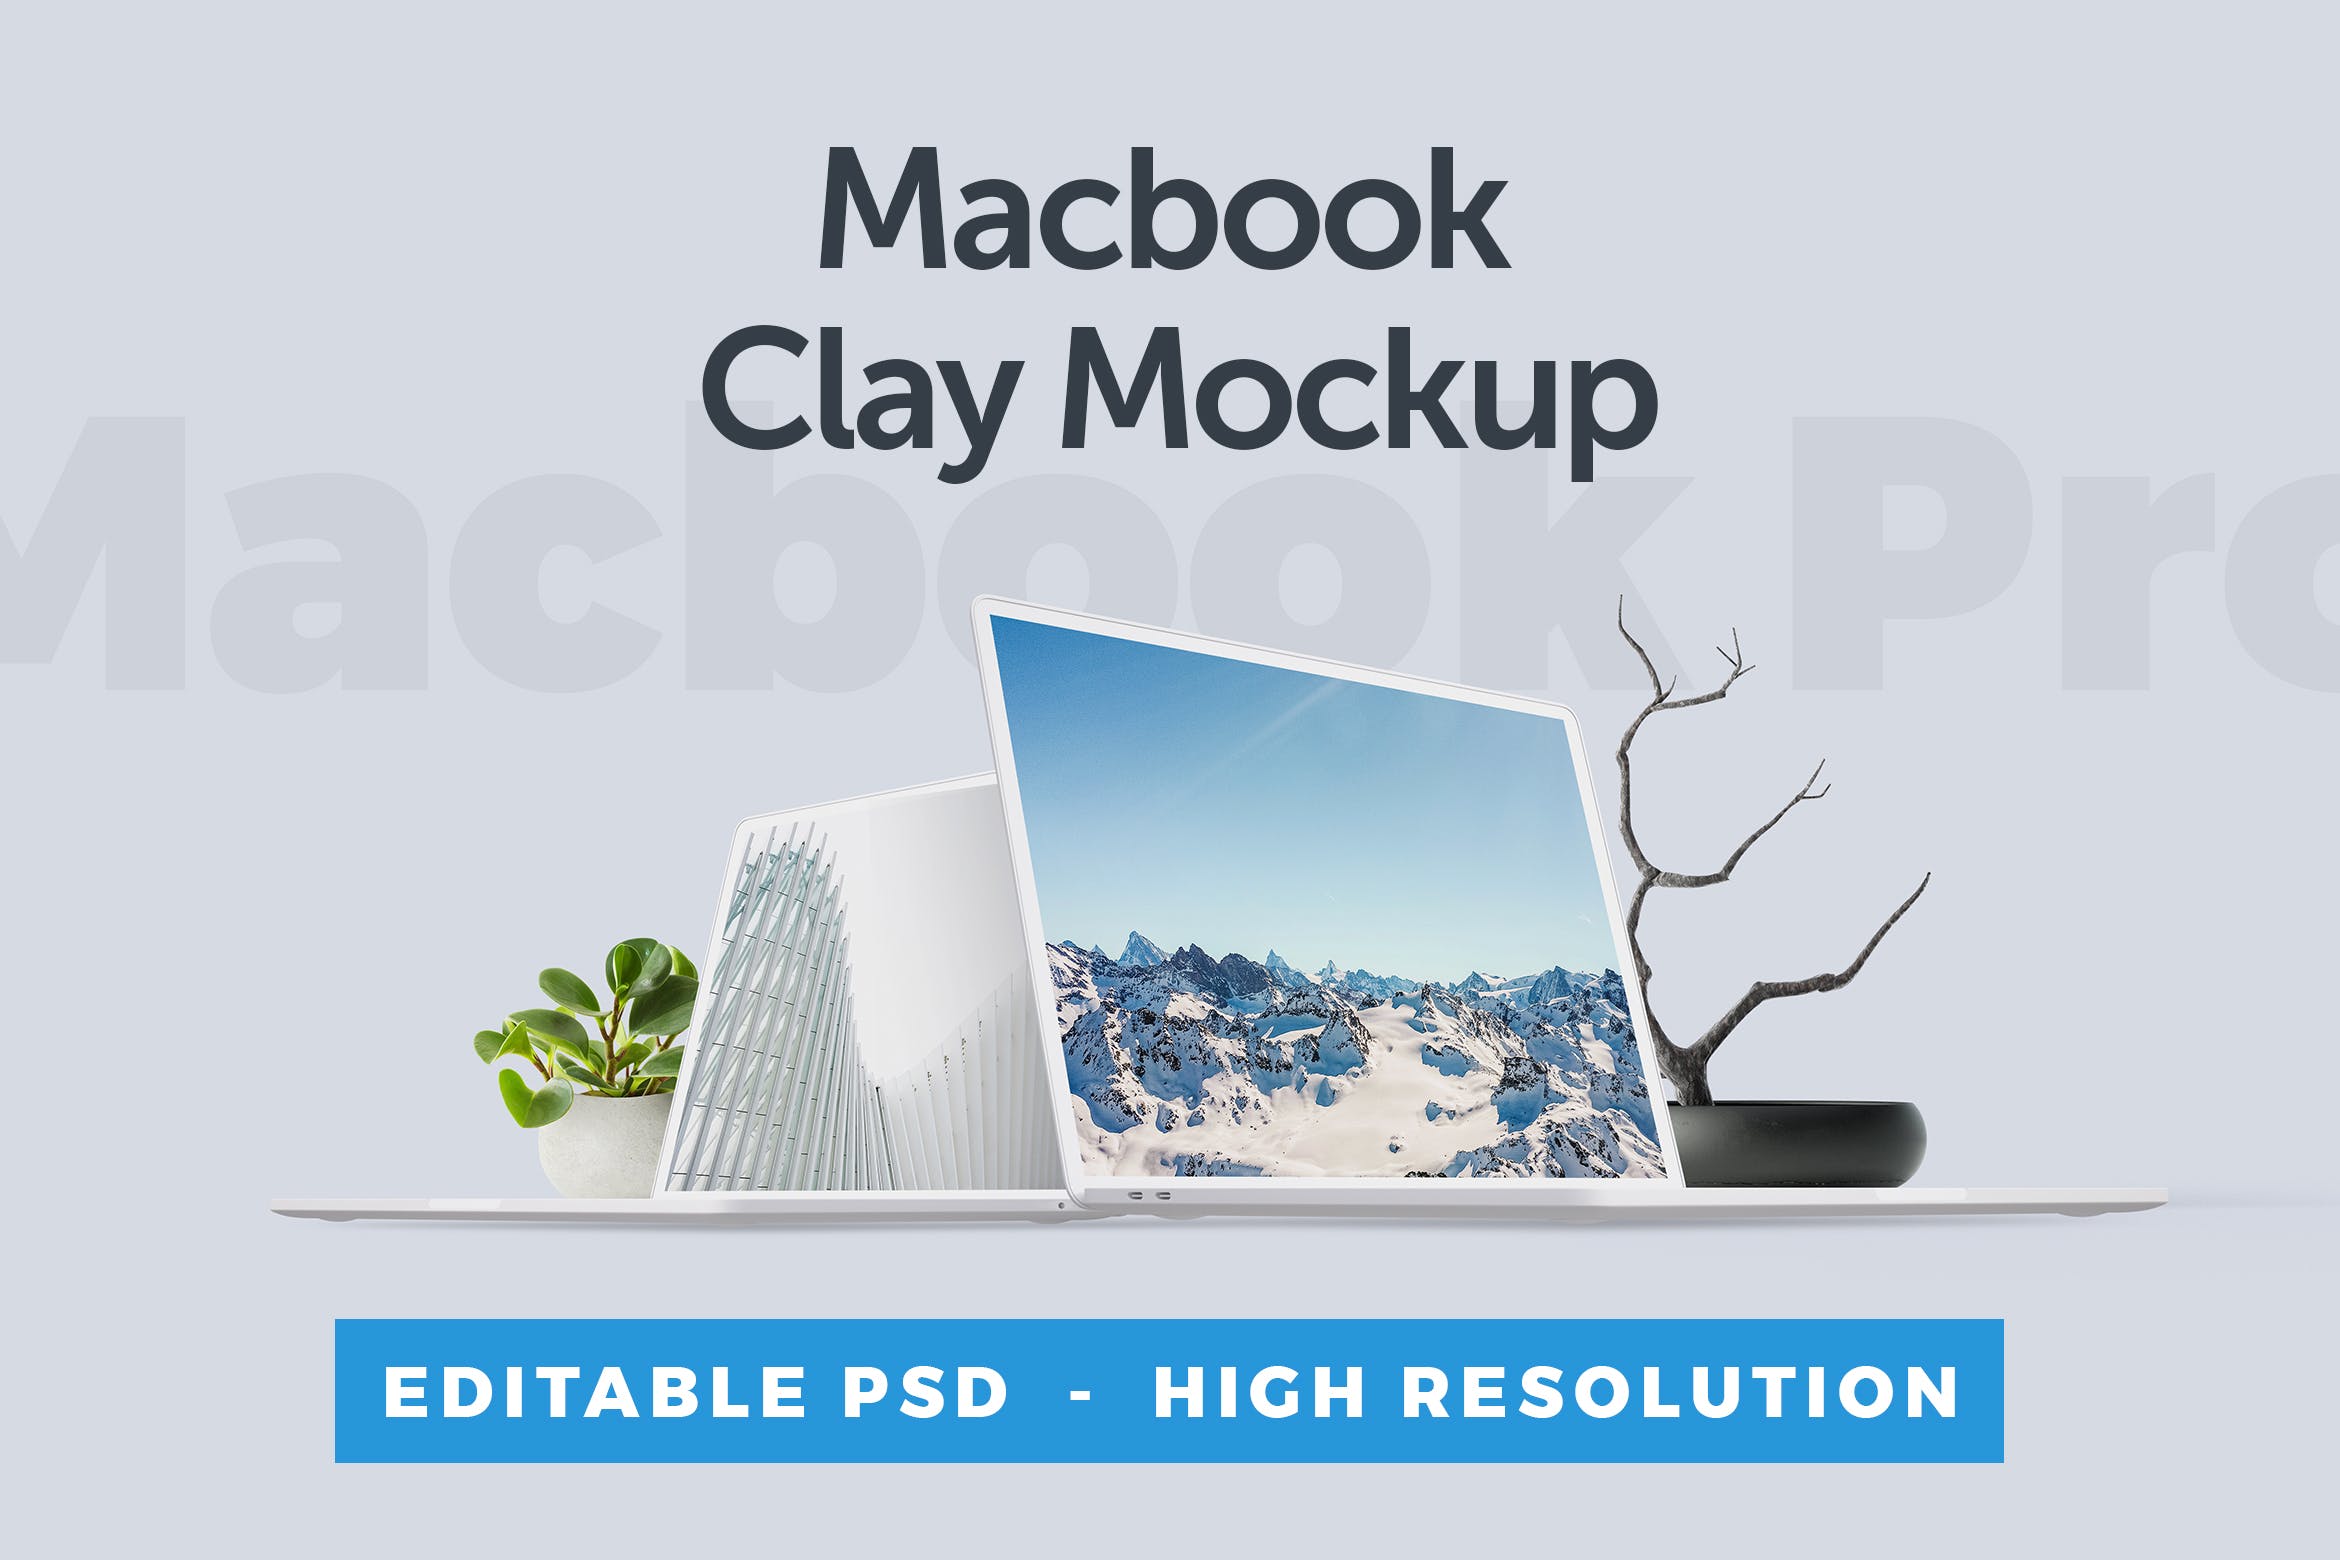 MacBook笔记本电脑屏幕演示16图库精选样机 Macbook Clay Mockup插图